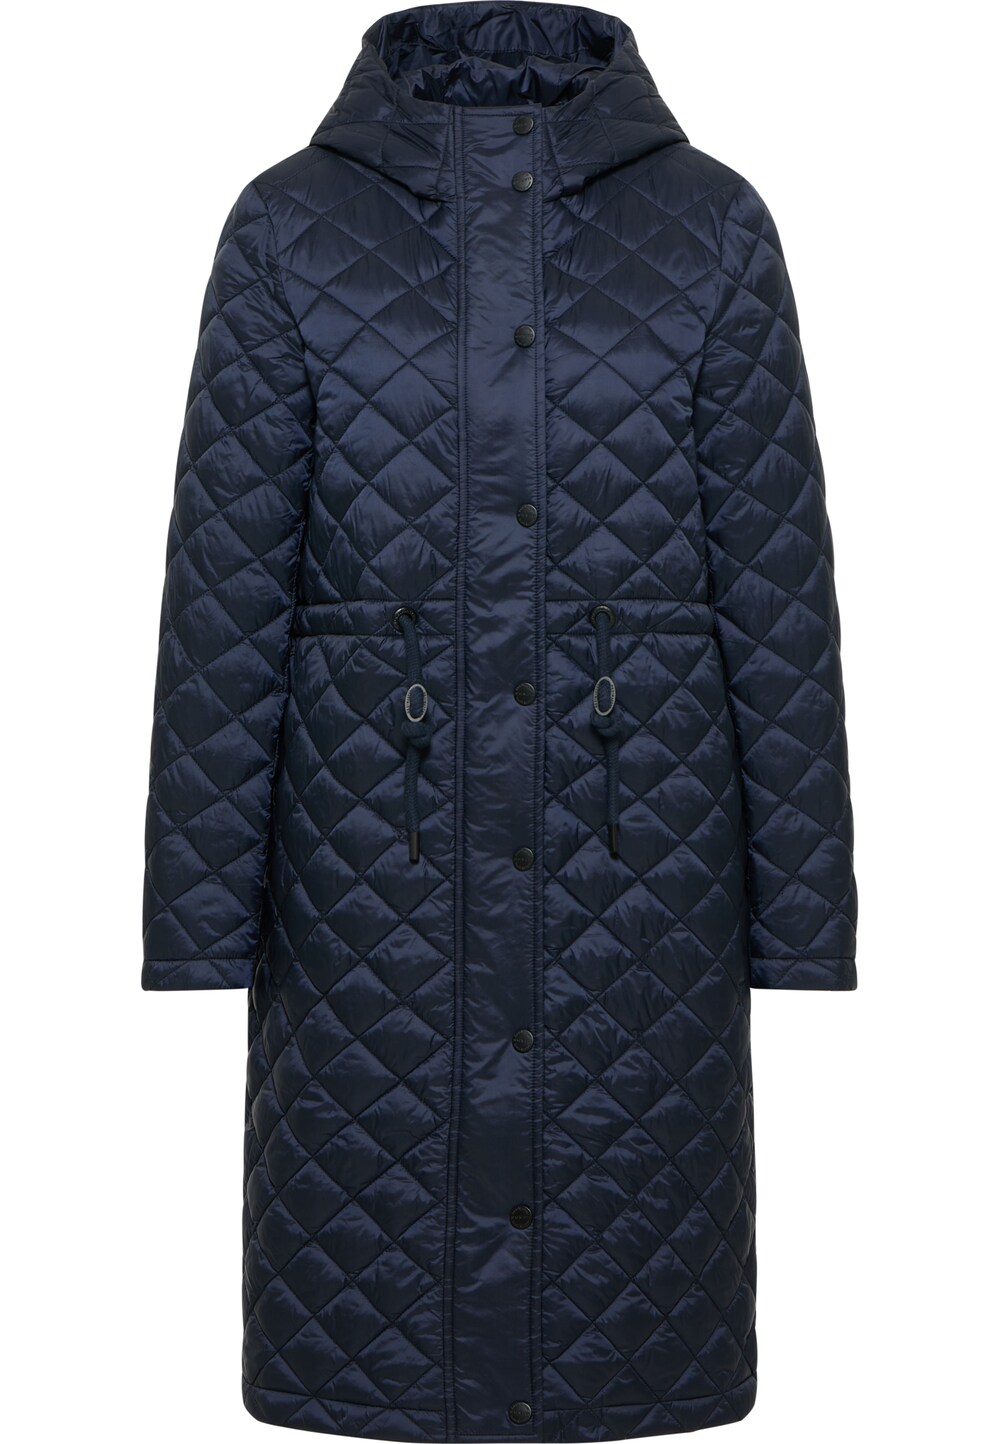 Межсезонное пальто DreiMaster, ночной синий межсезонное пальто dreimaster klassik ночной синий